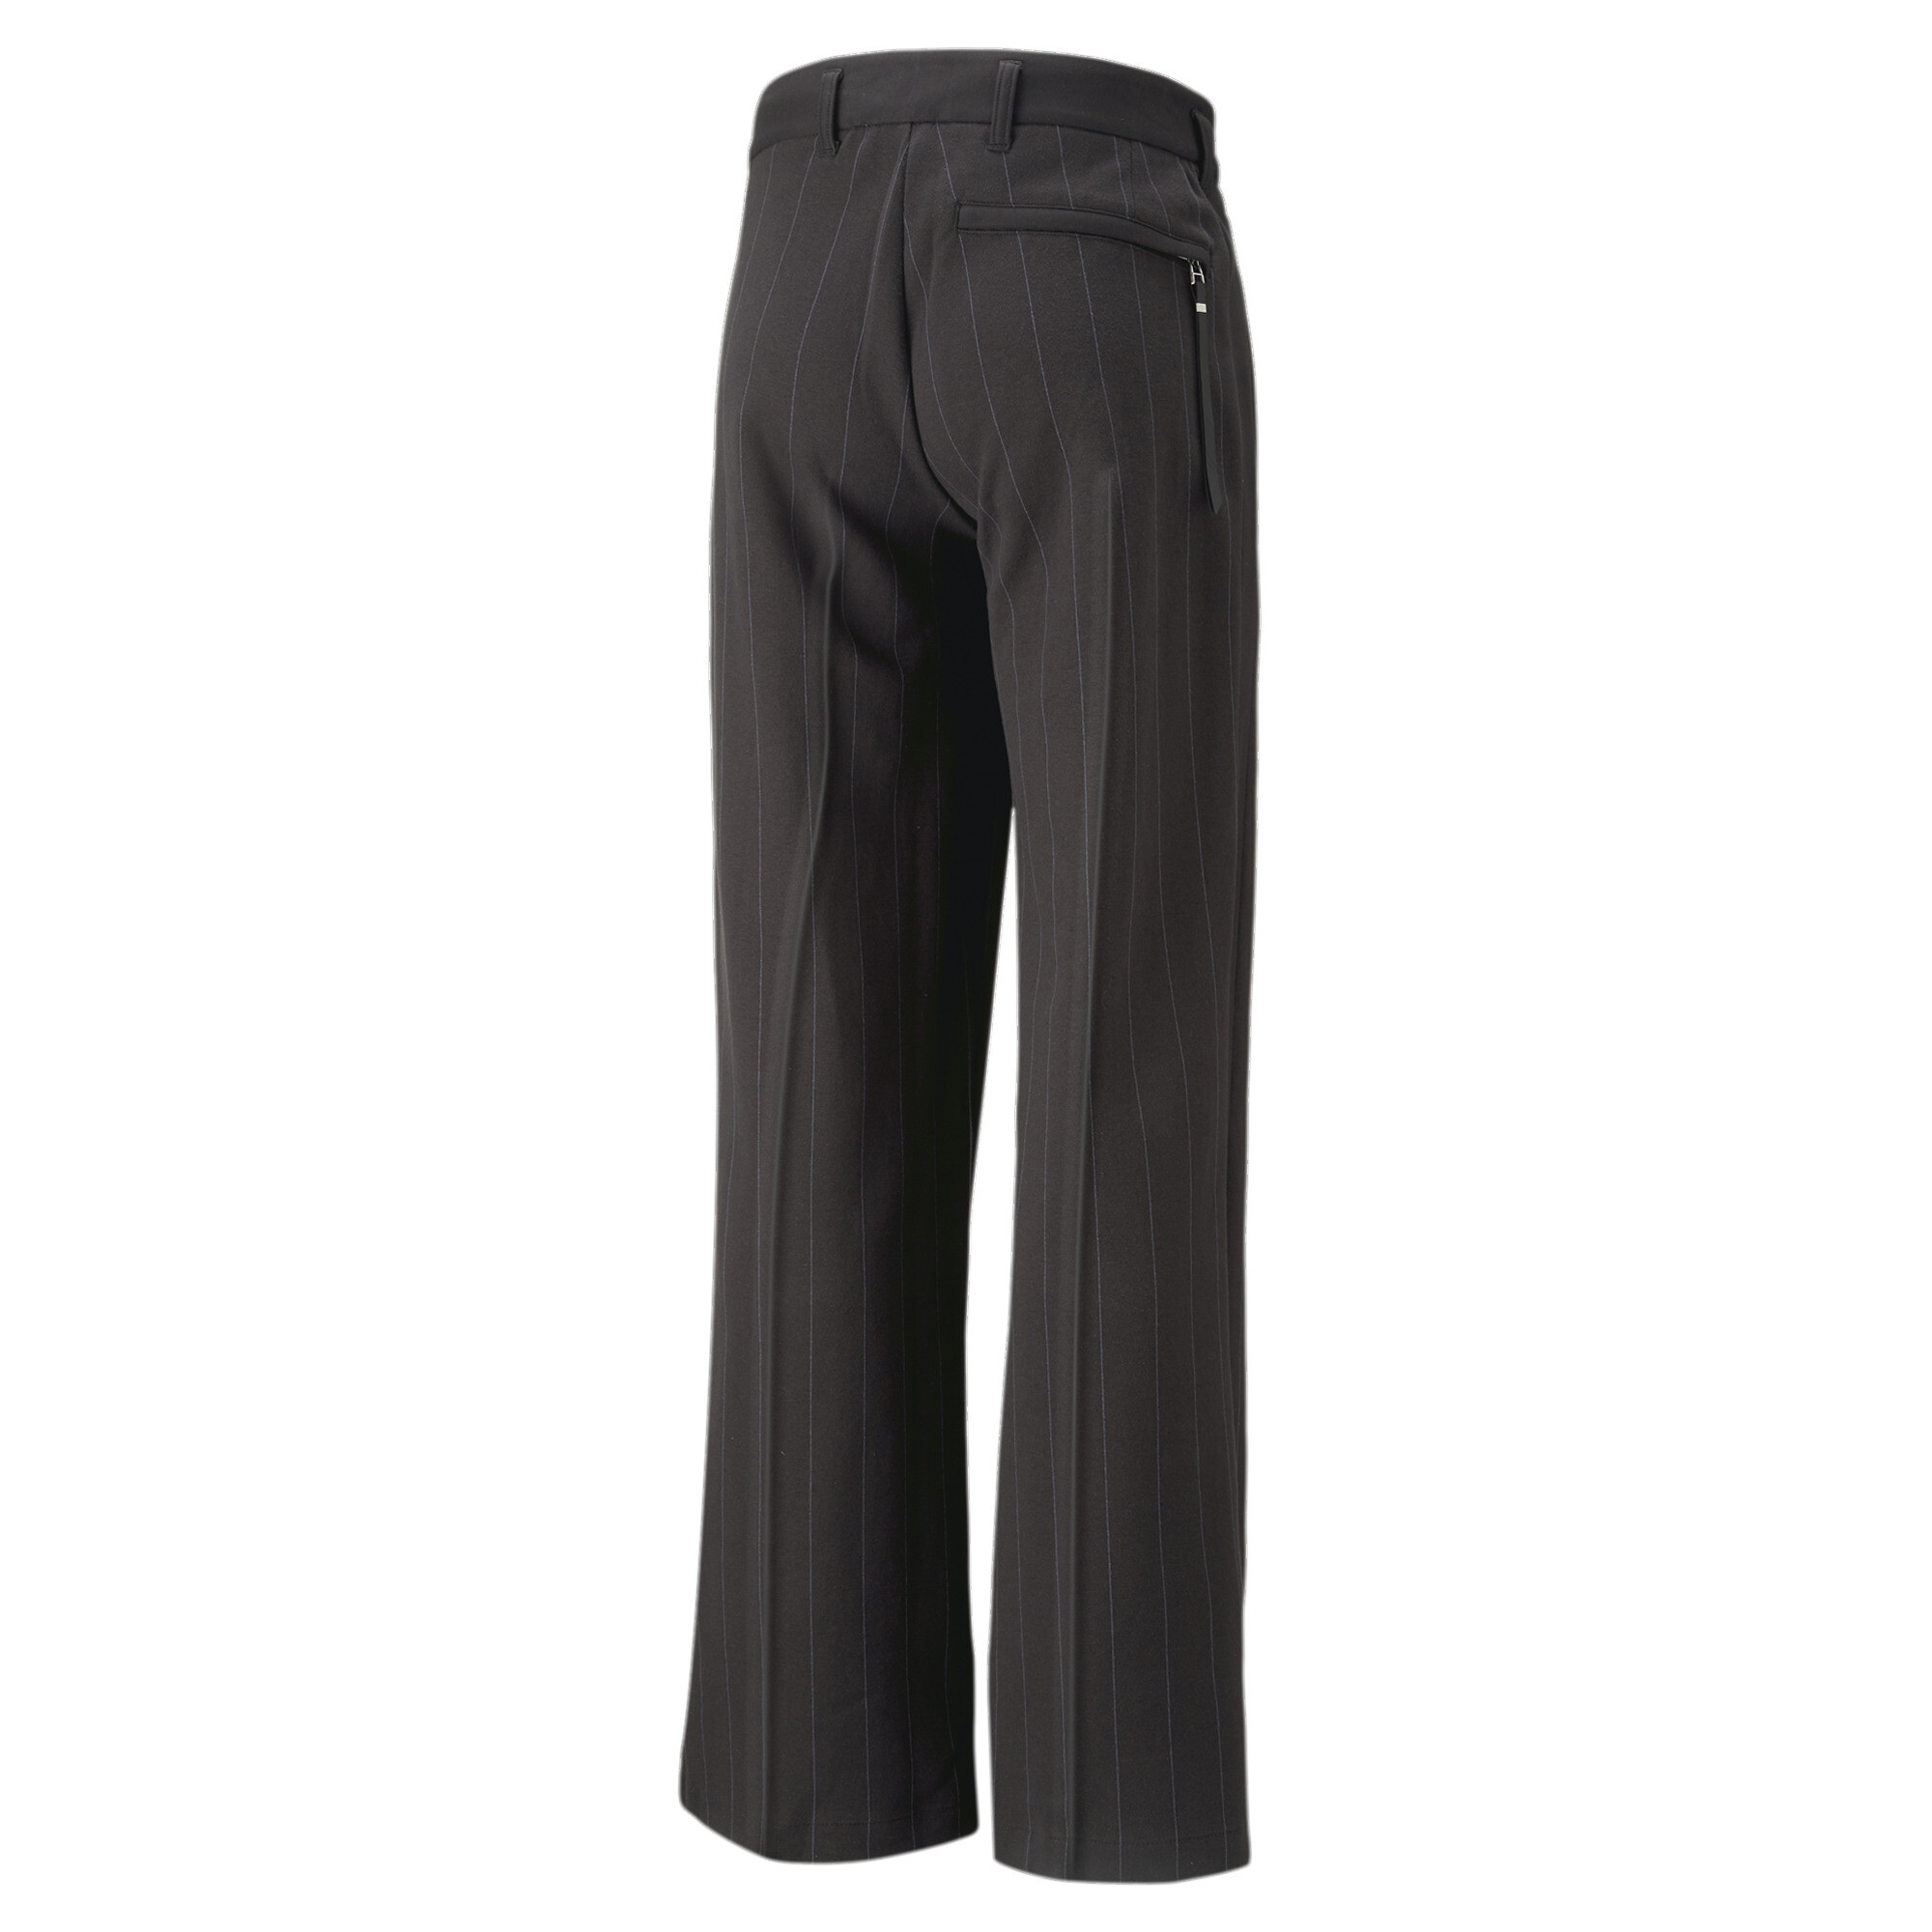 Men's PUMA LUXE SPORT T7 Pleated Pants In Black, Size EU 30